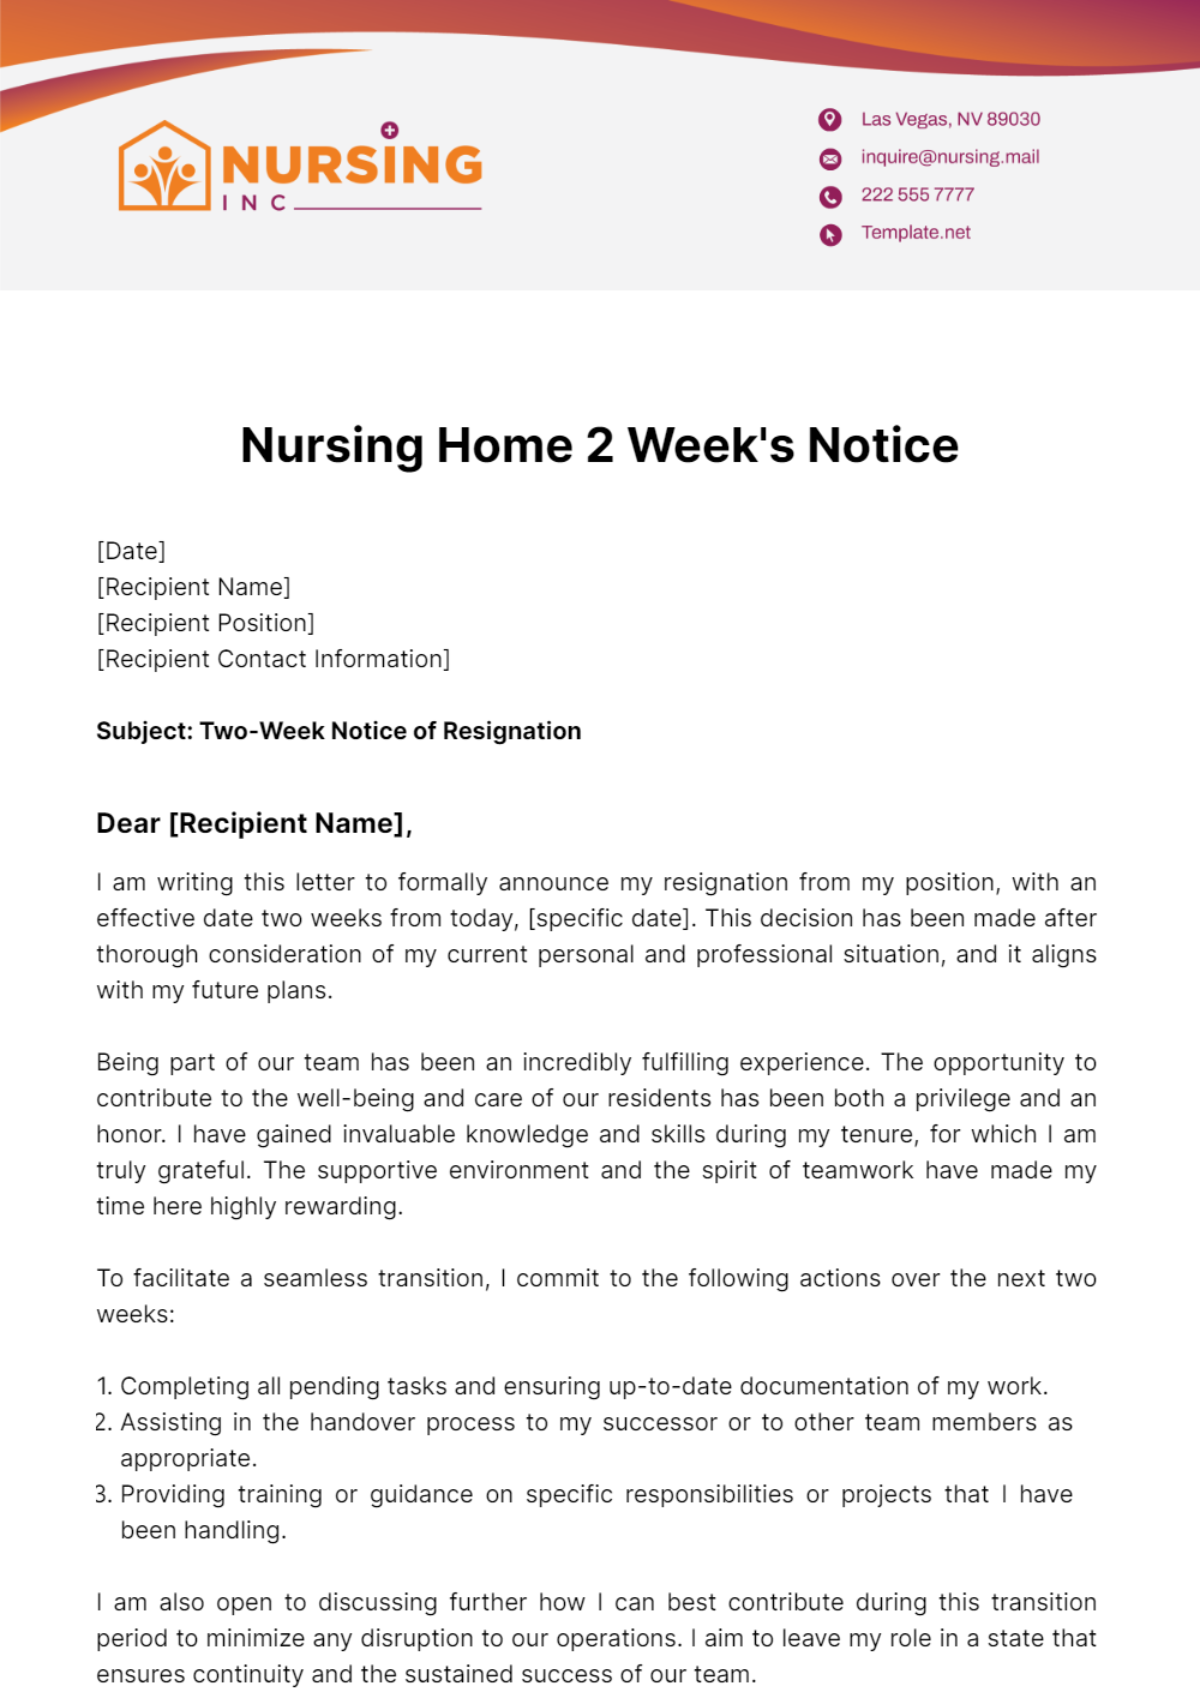 Nursing Home 2 Week's Notice Template